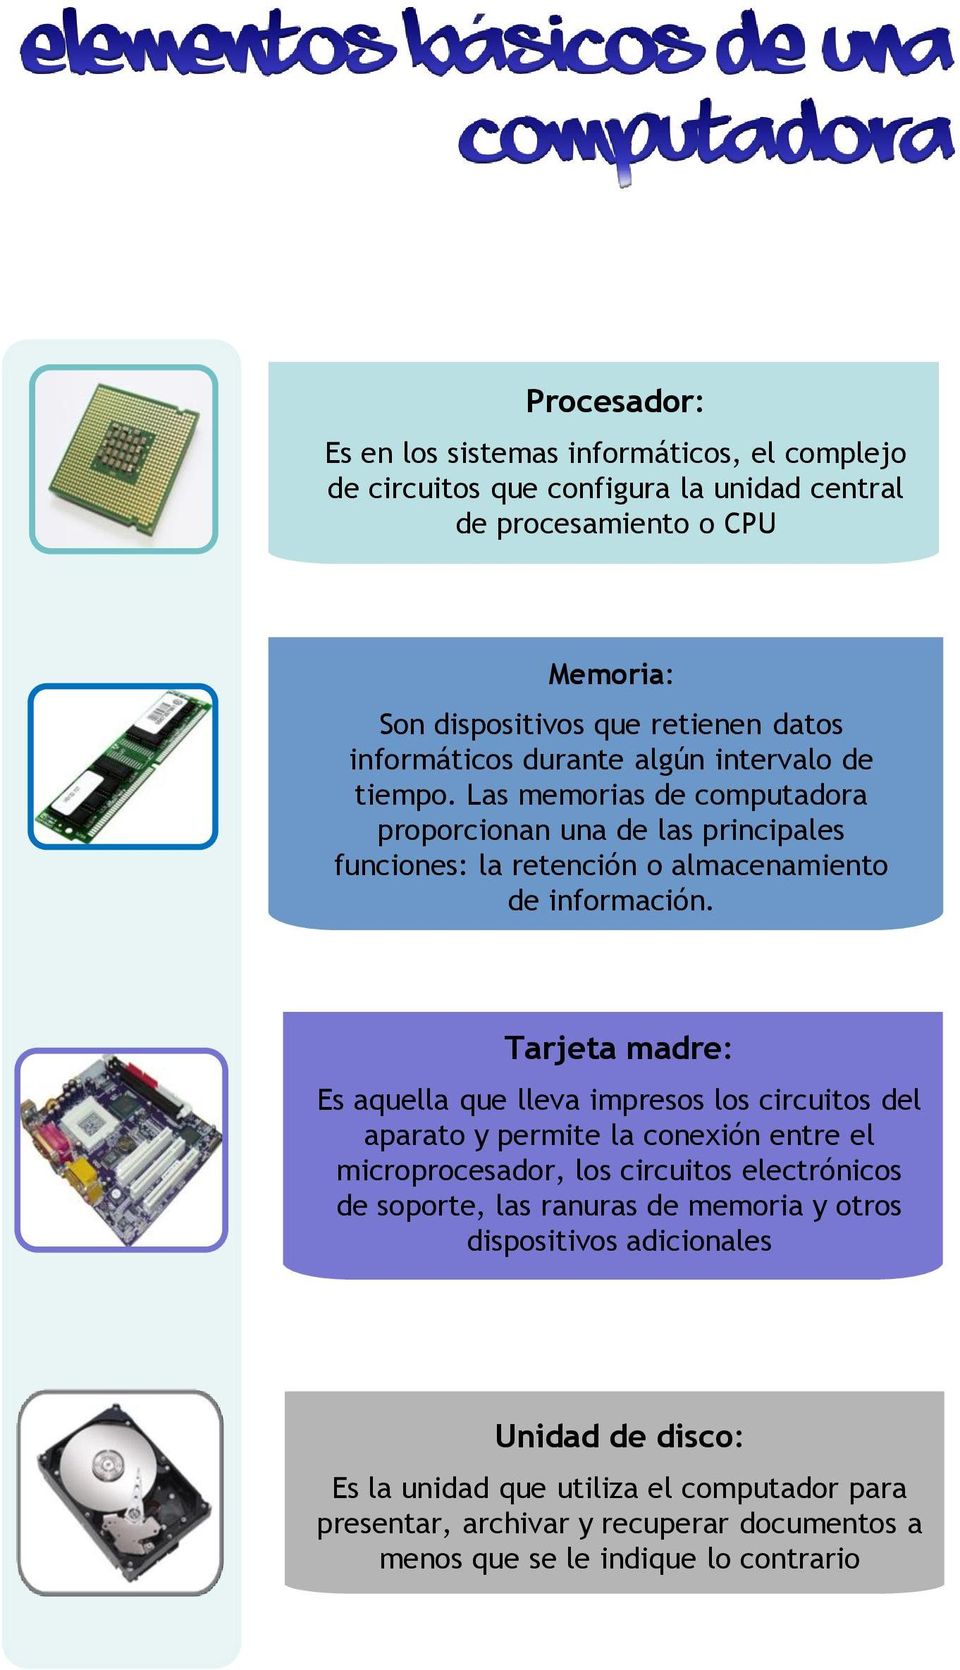 Tarjeta madre: Es aquella que lleva impresos los circuitos del aparato y permite la conexión entre el microprocesador, los circuitos electrónicos de soporte, las ranuras de